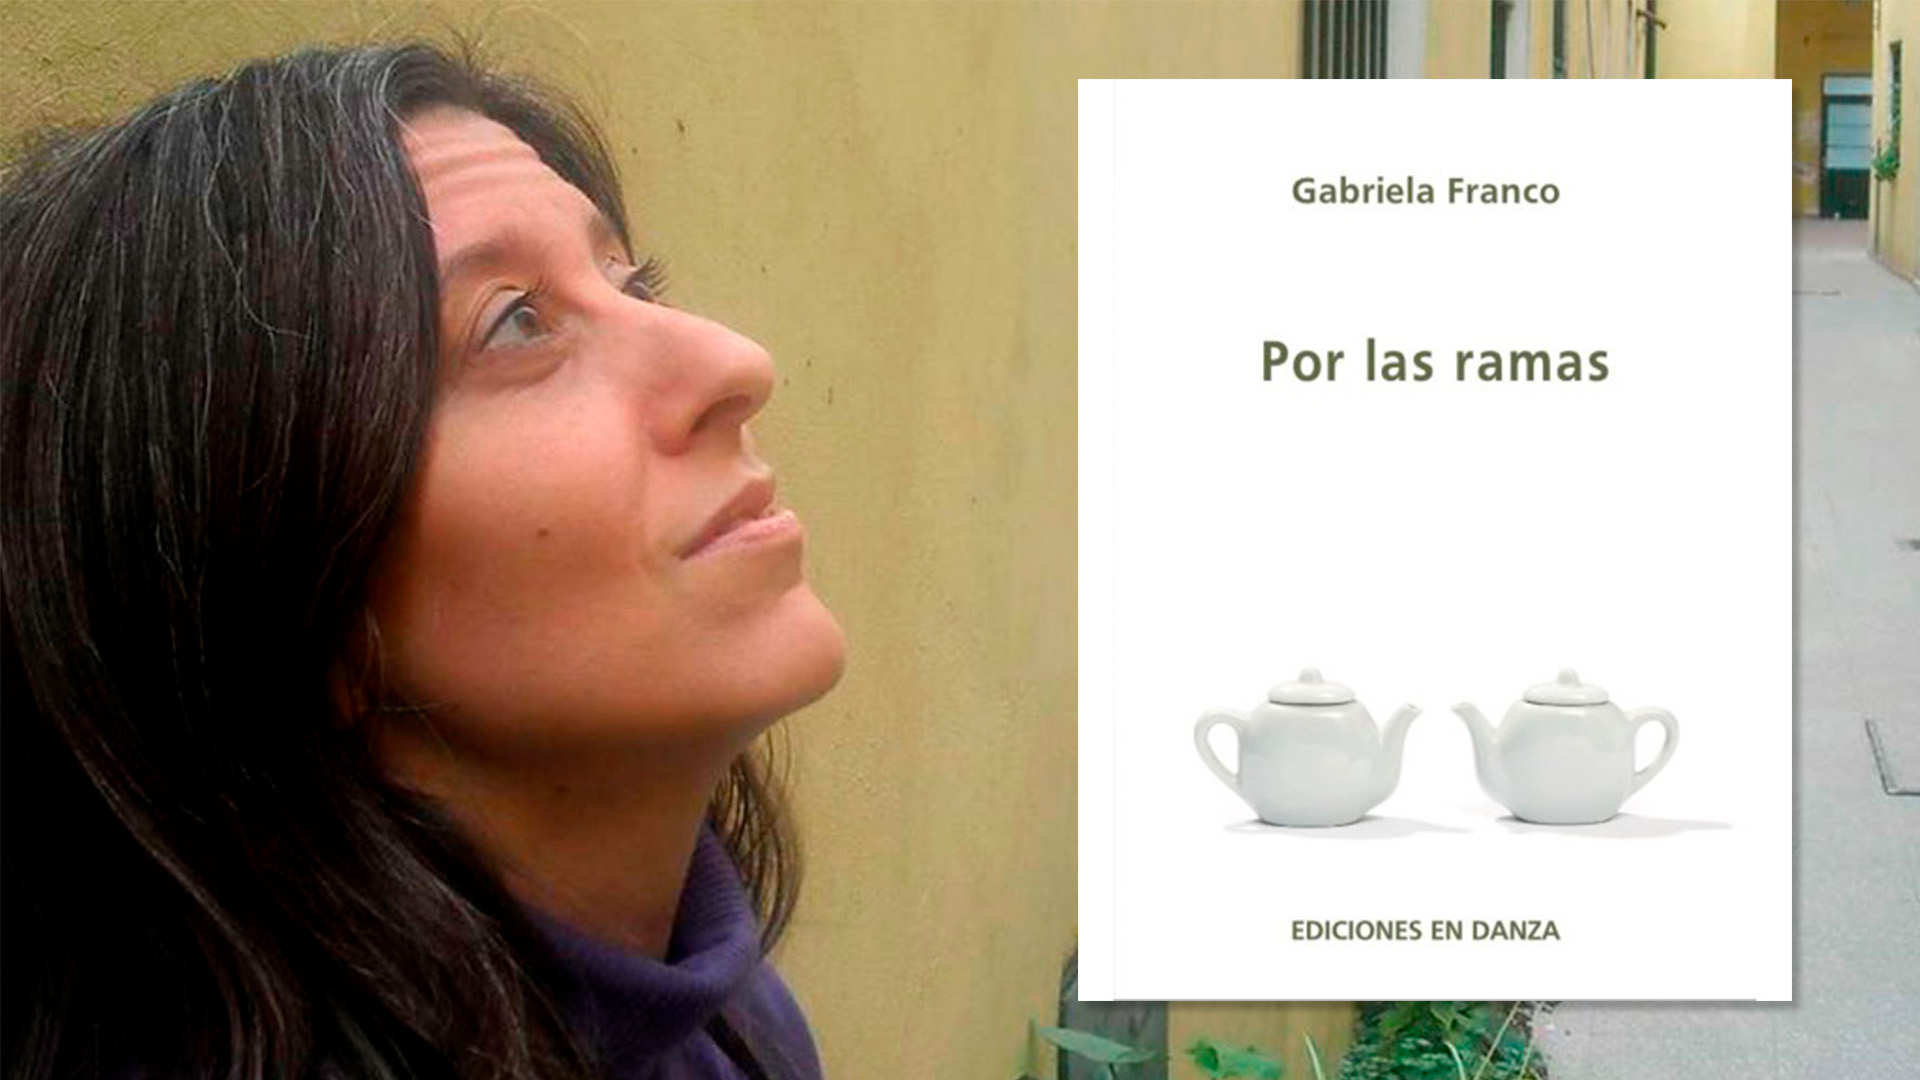 50 poemas a los 50 años: cómo cifrar (y descifrar) el misterio de la vida según la premiada poeta Gabriela Franco